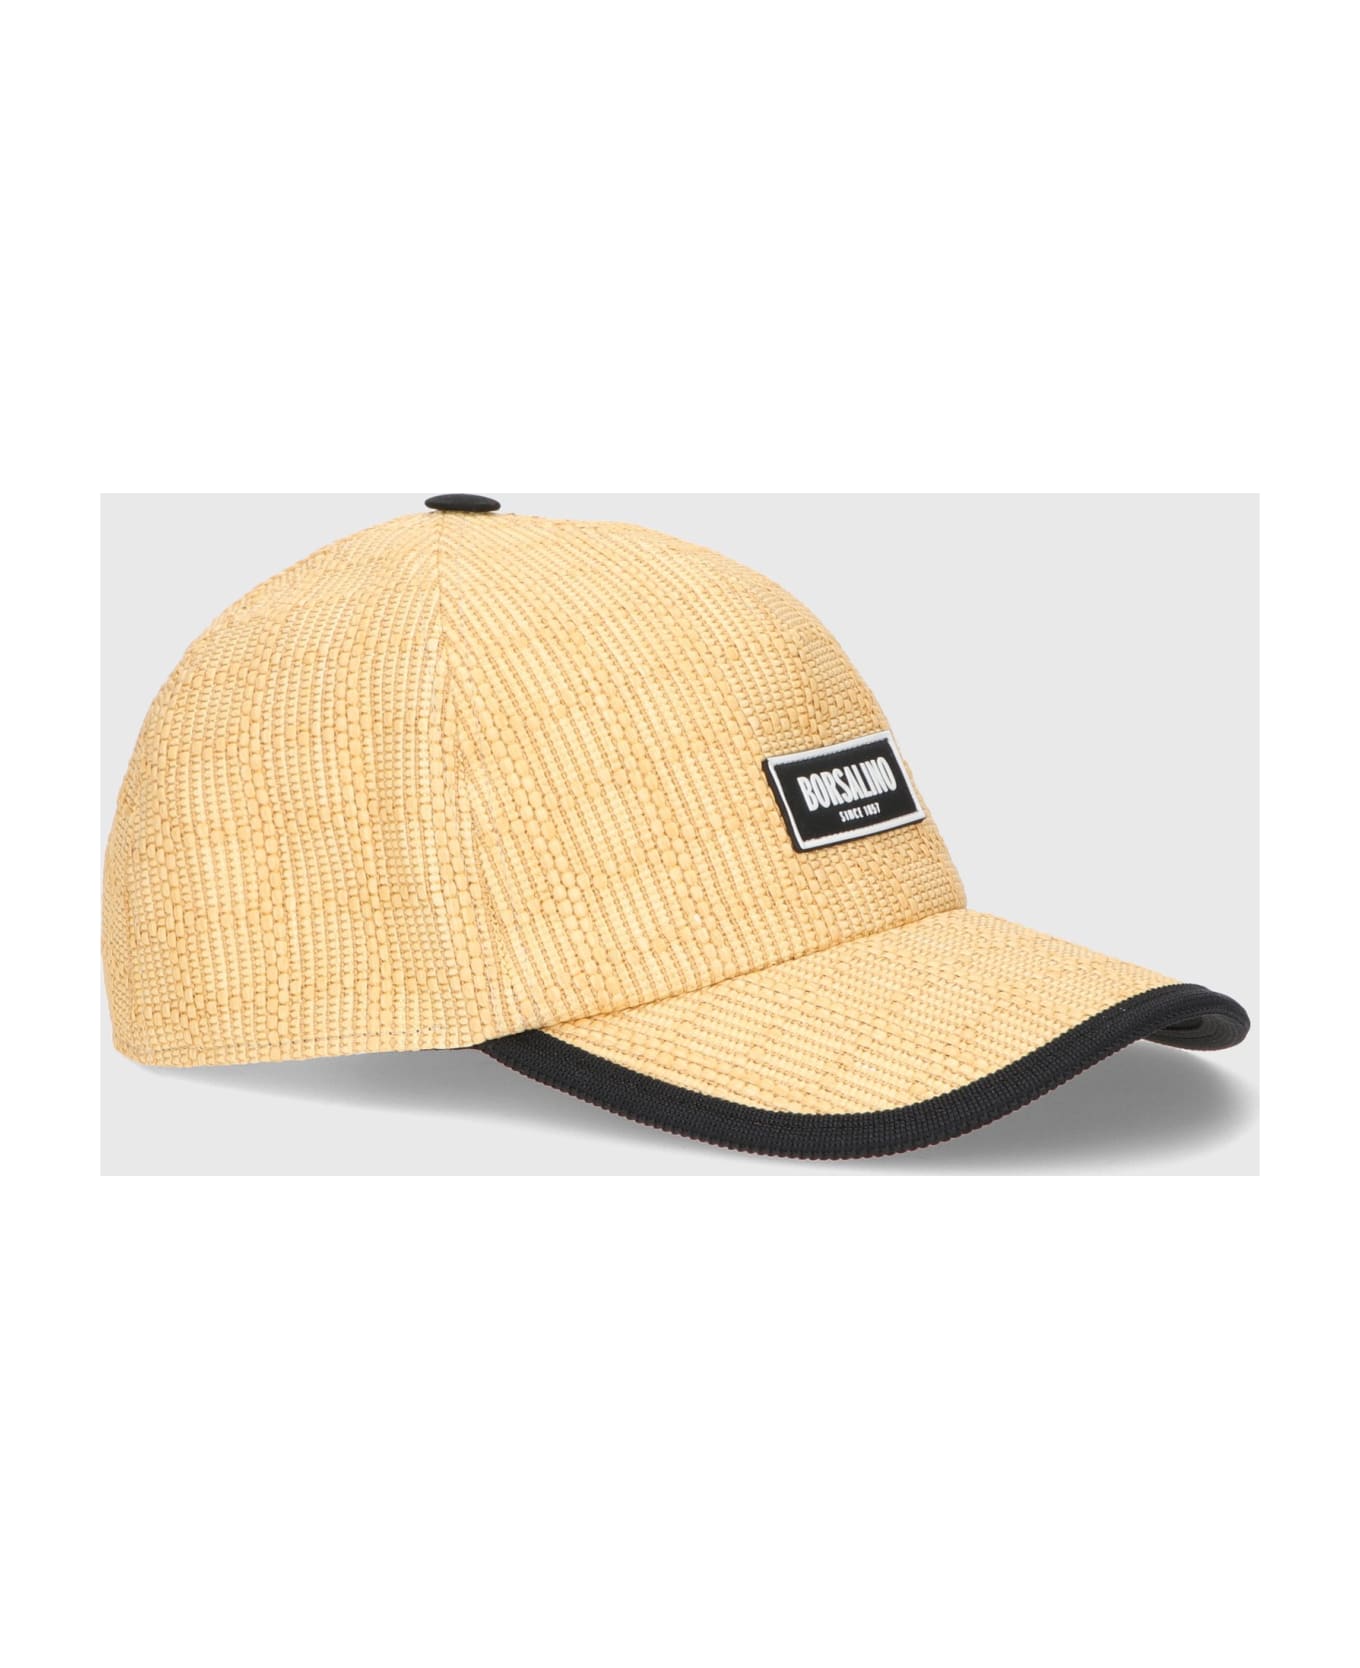 Borsalino Skater Baseball Cap - BEIGE 帽子